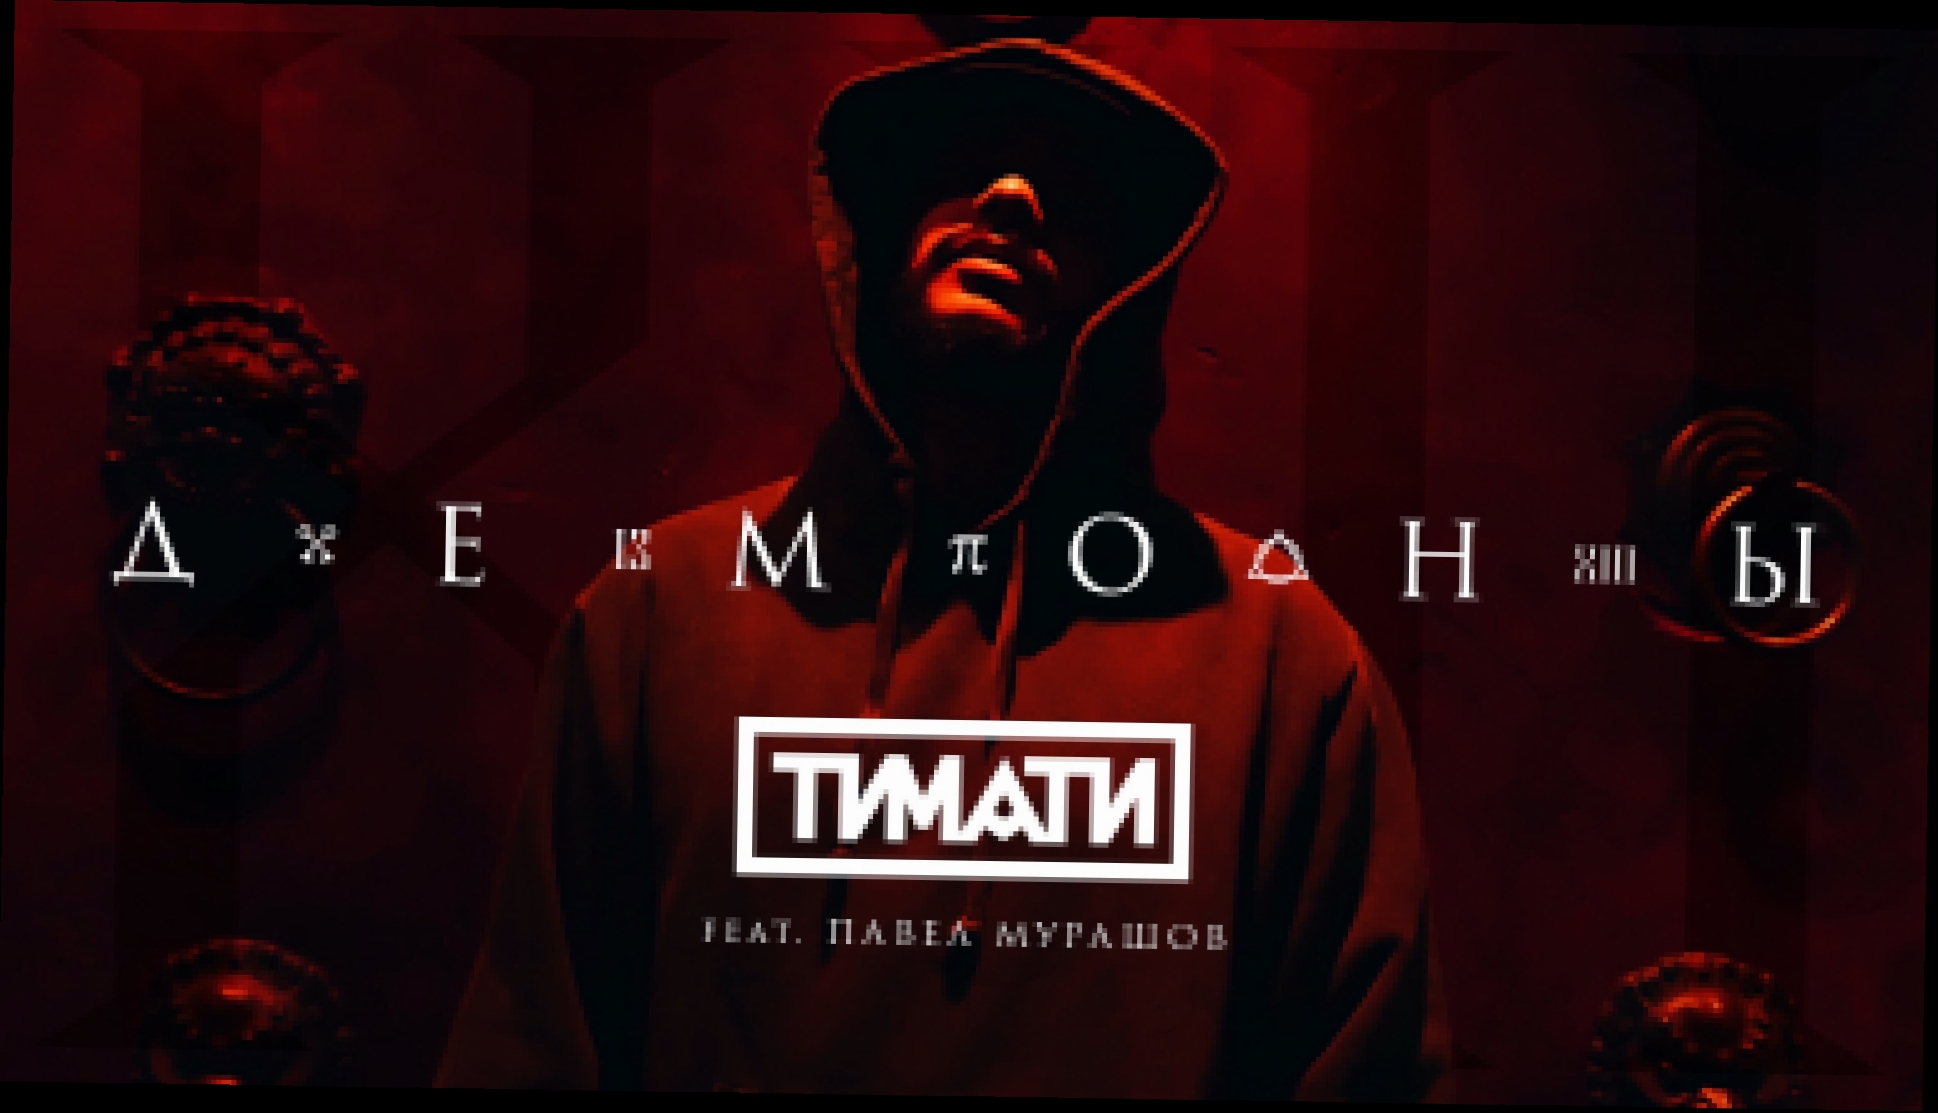 Тимати feat. Павел Мурашов - Демоны (премьера клипа, 2017) - видеоклип на песню